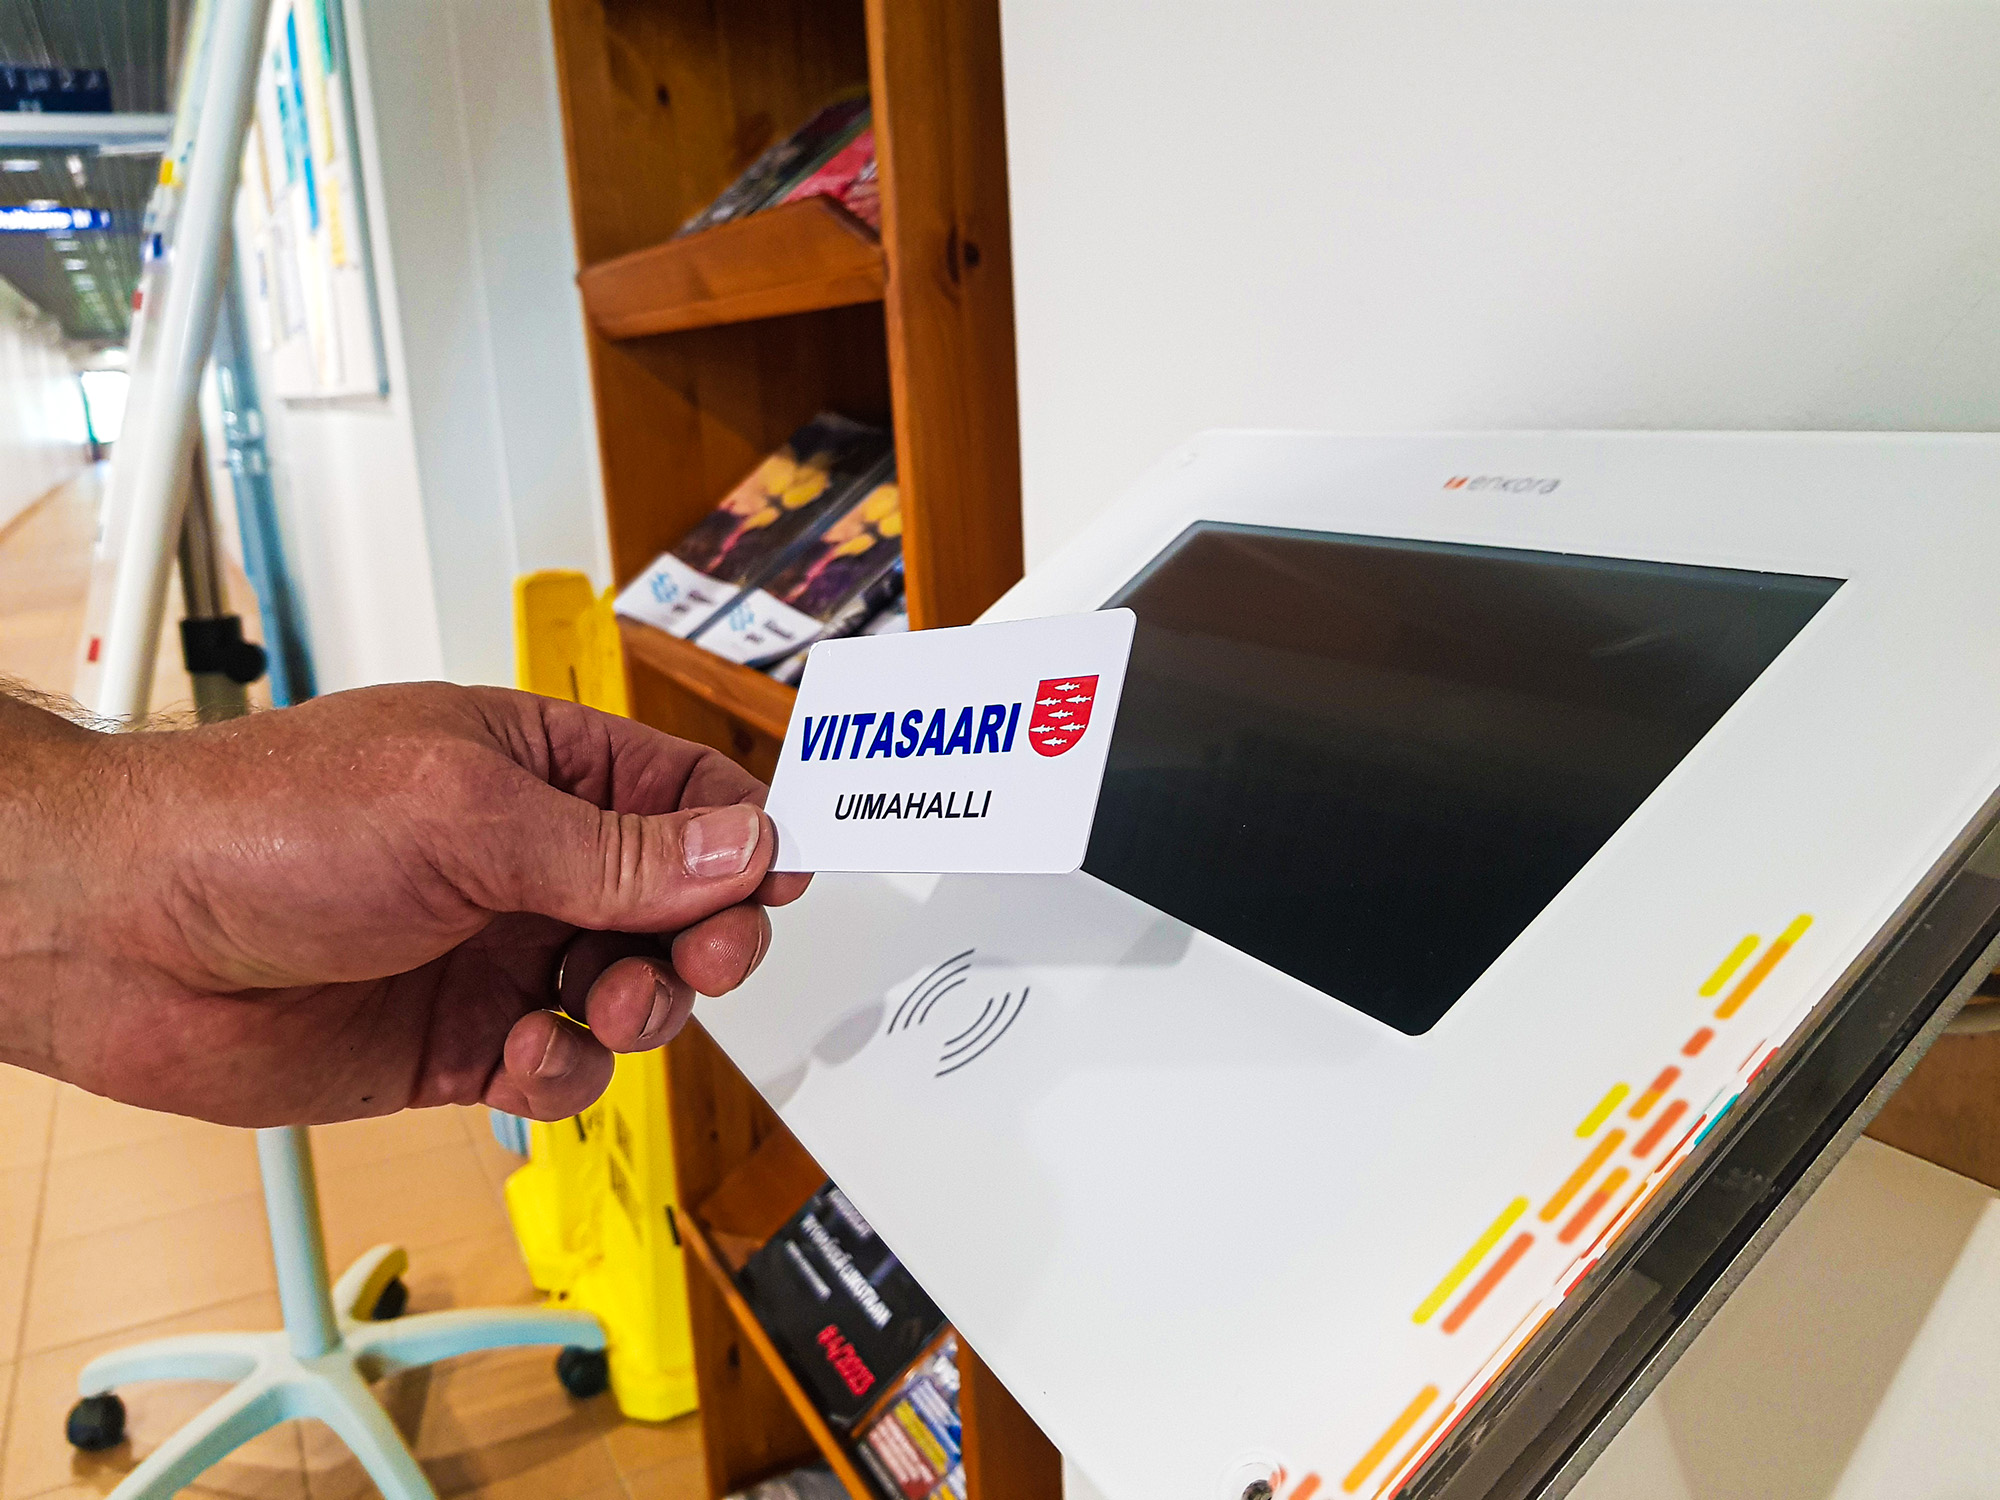 Henkilön käsi pitää Uimahalli Simmarin asiakaskorttia kortinlukulaitteen edustalla